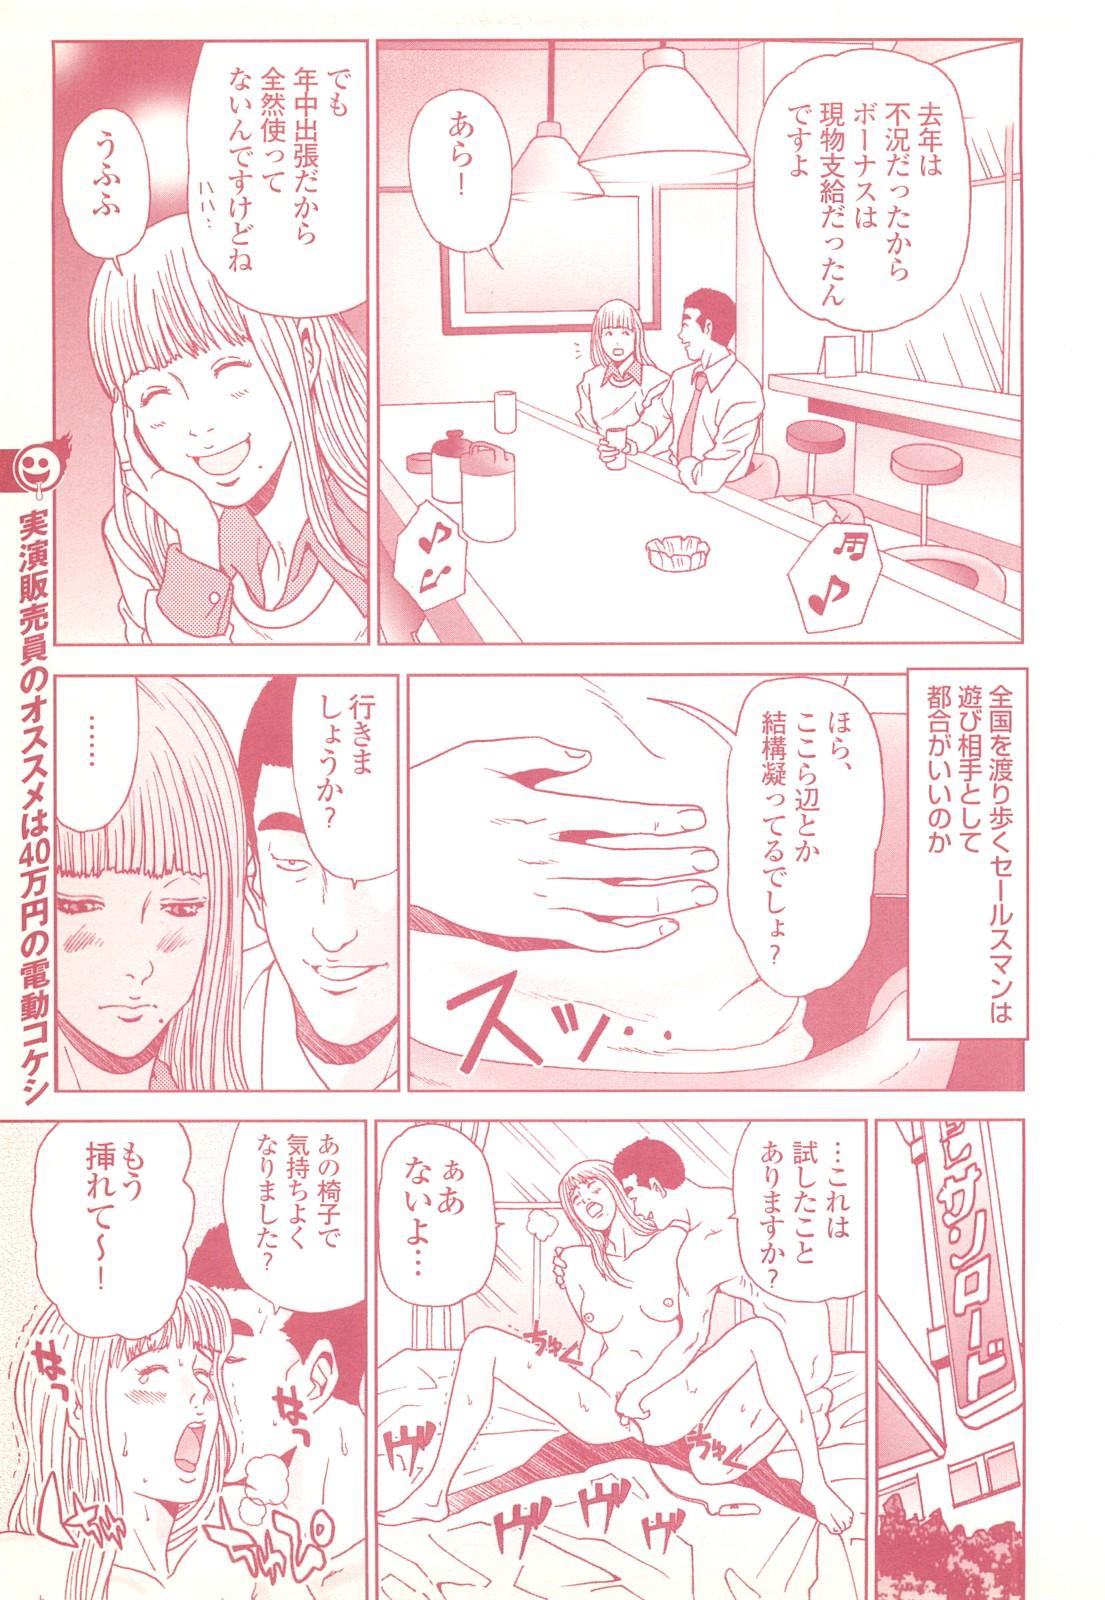 コミック裏モノJAPAN Vol.18 今井のりたつスペシャル号 84